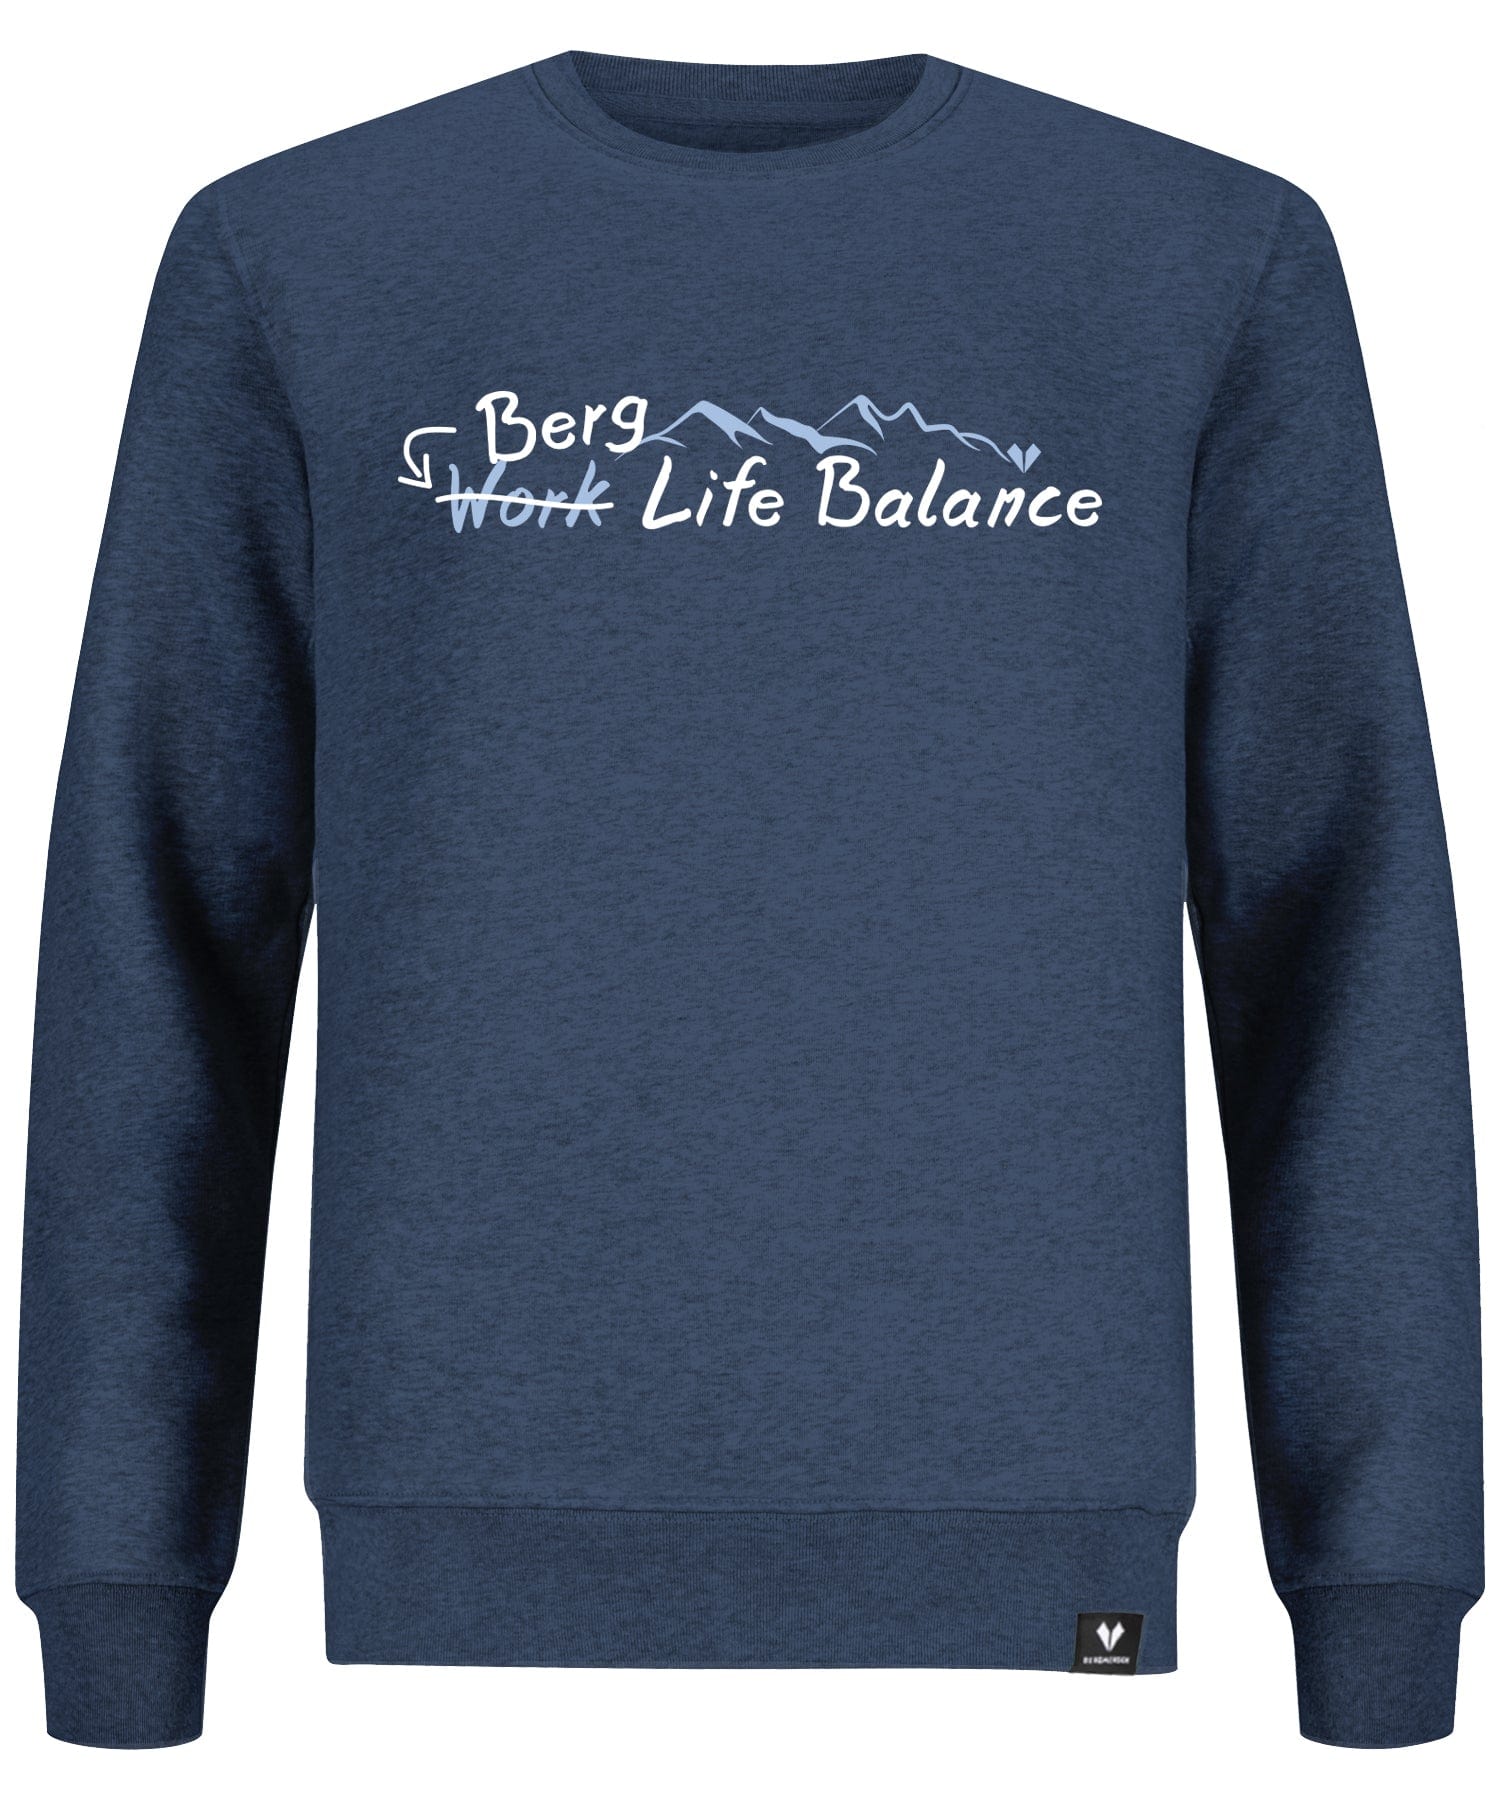 Berg Life Balance - Unisex Premium Organic Sweatshirt